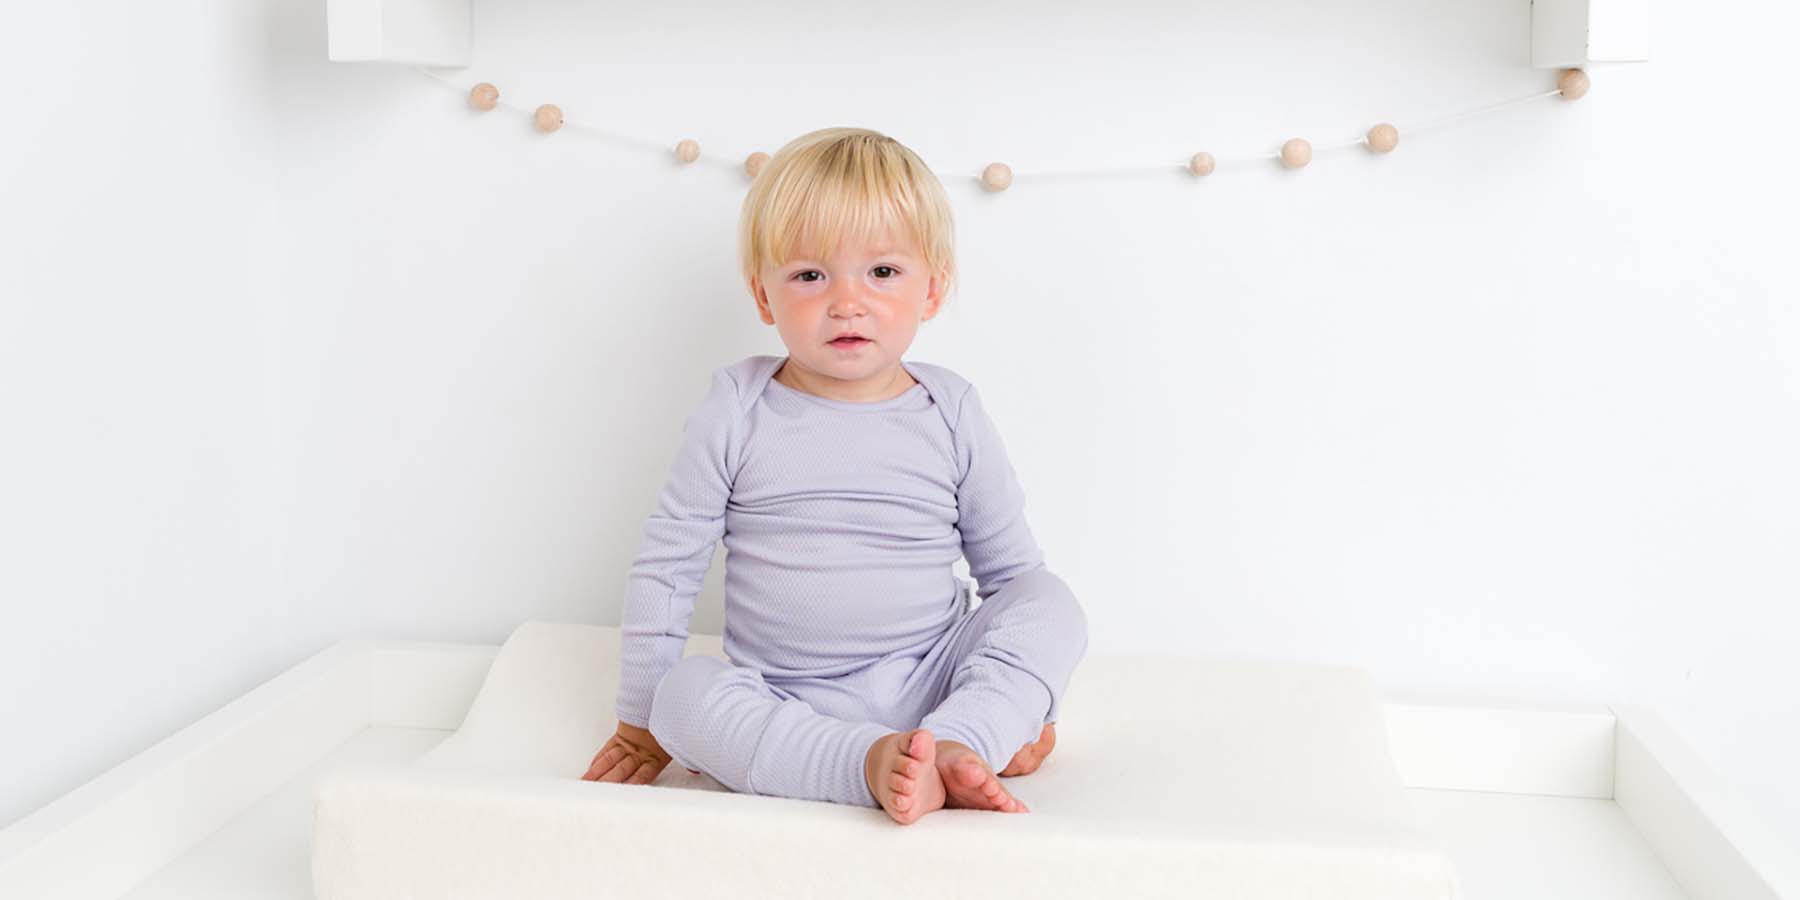 Baby dressed in Merineo's pure superfine merino wool long sleeved top and leggings.